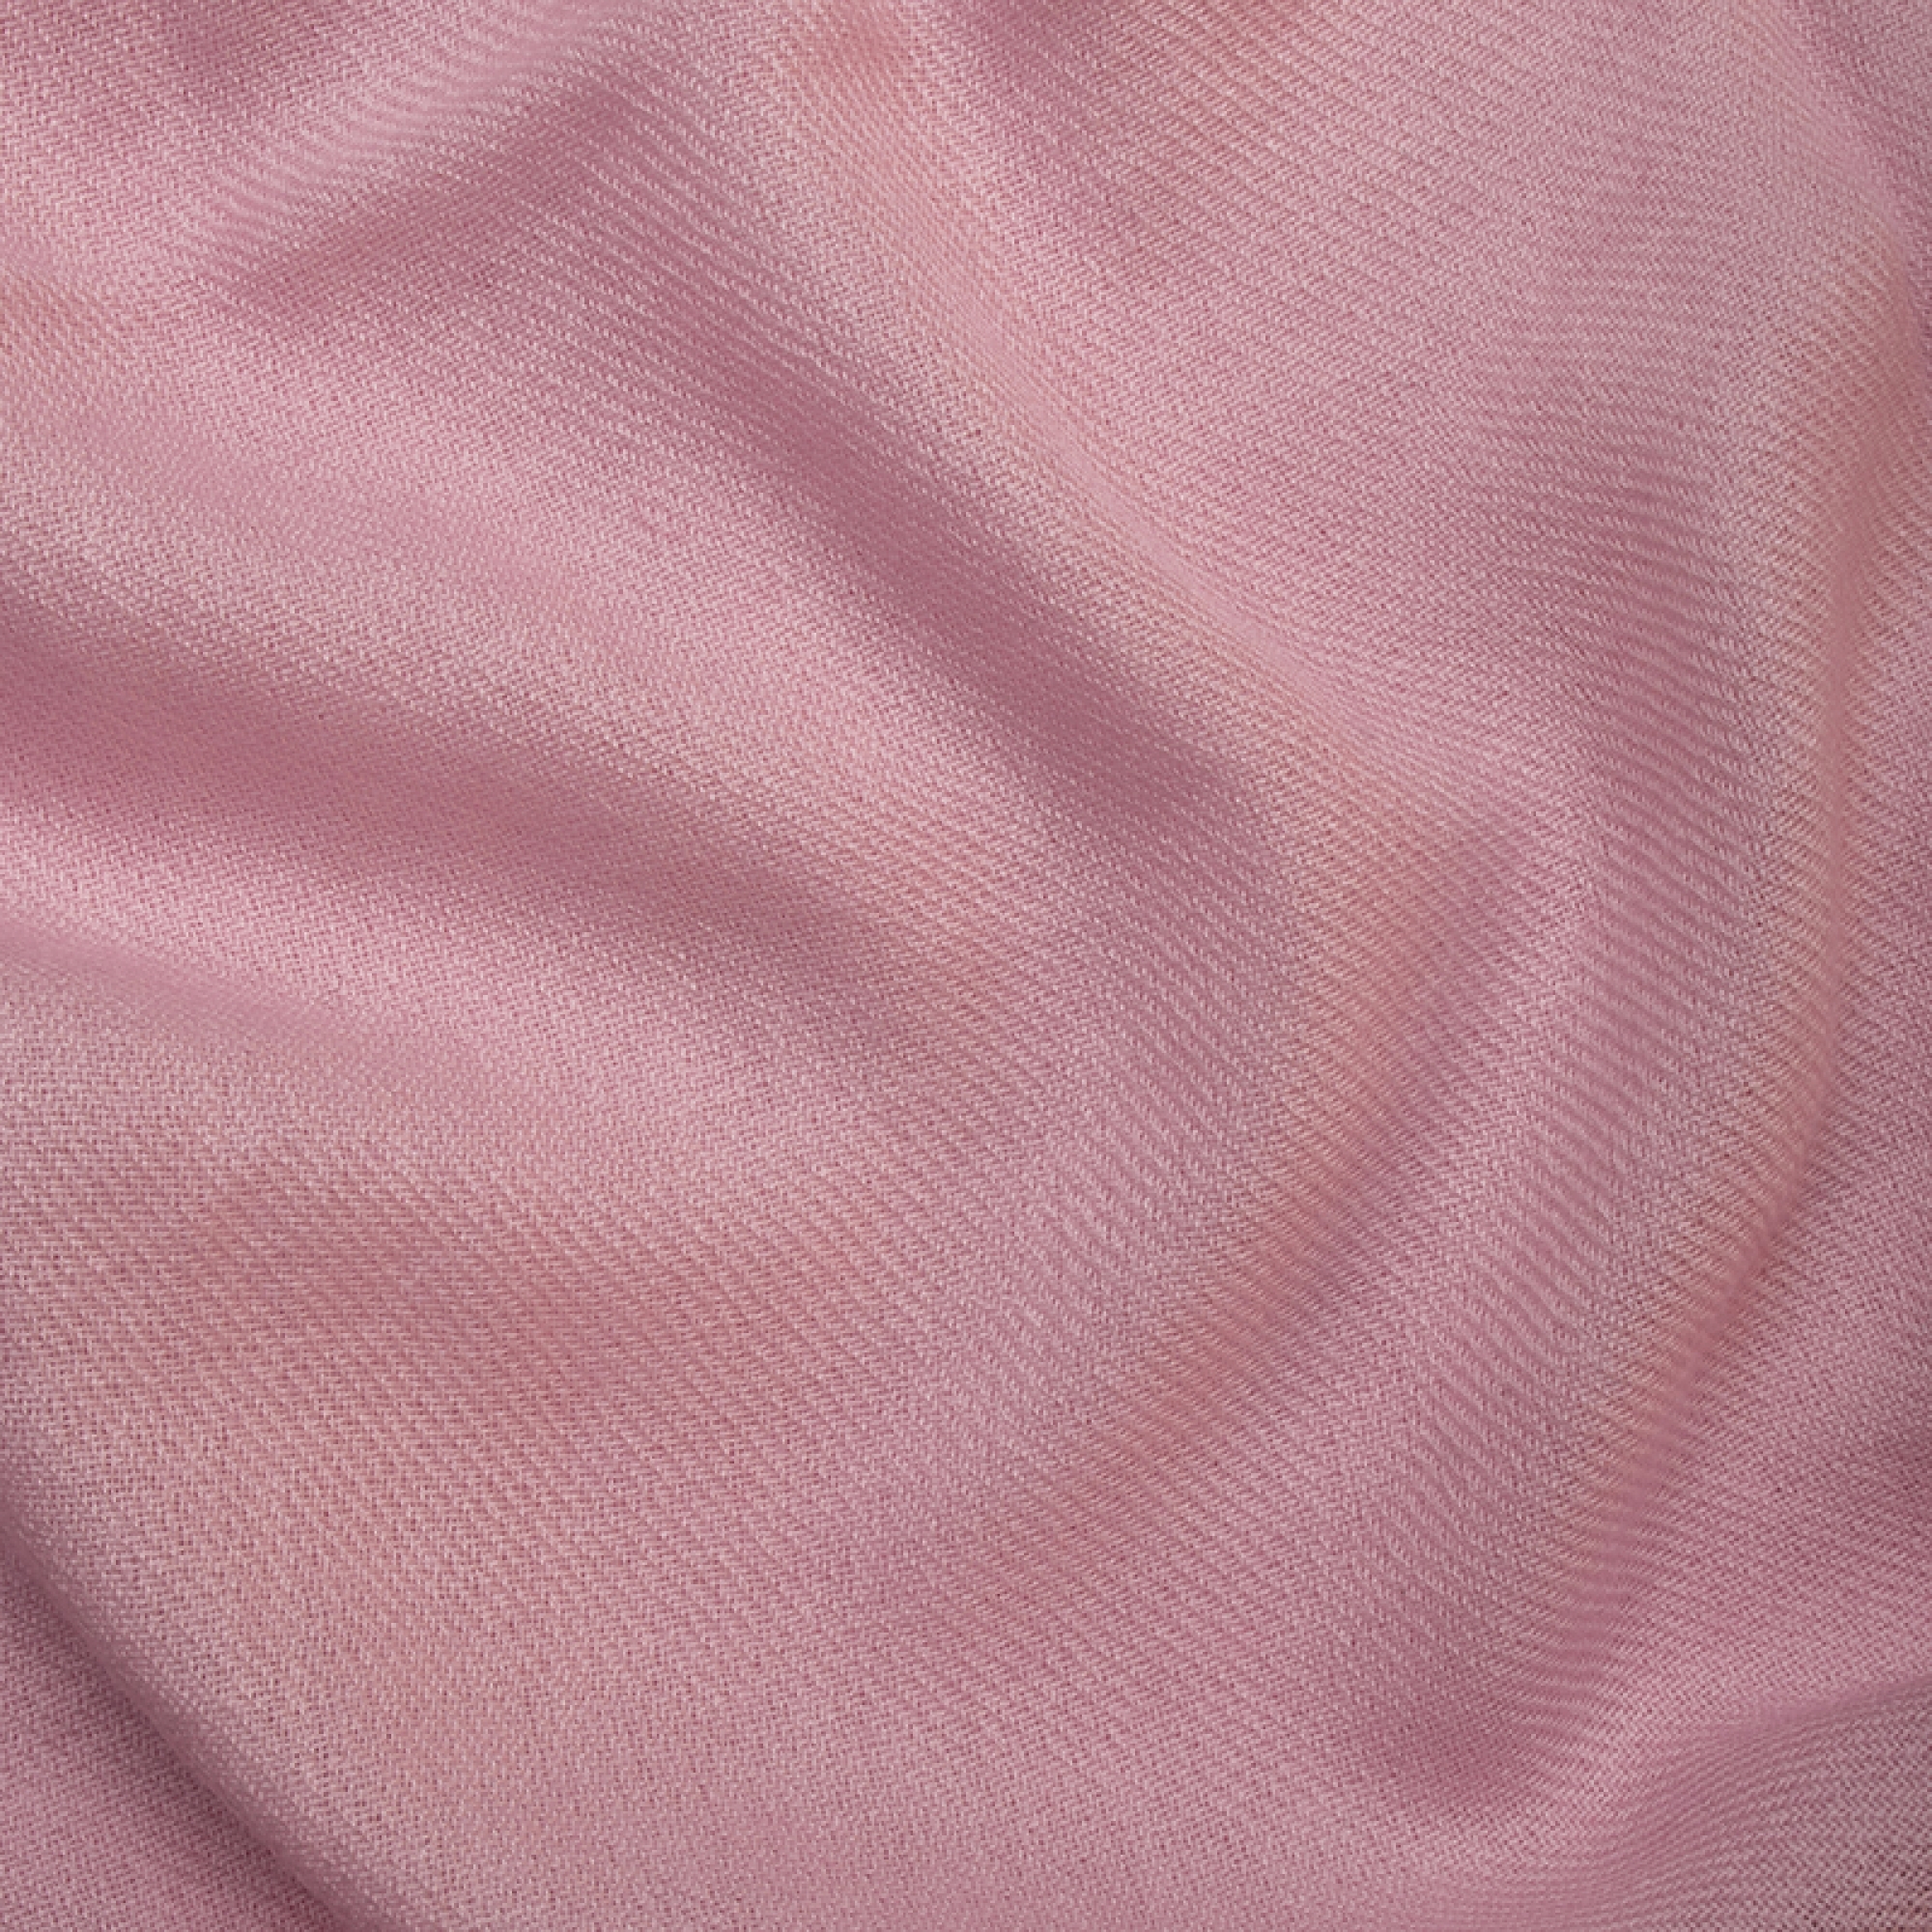 Cachemire accessoires couvertures plaids toodoo plain l 220 x 220 rose pale 220x220cm